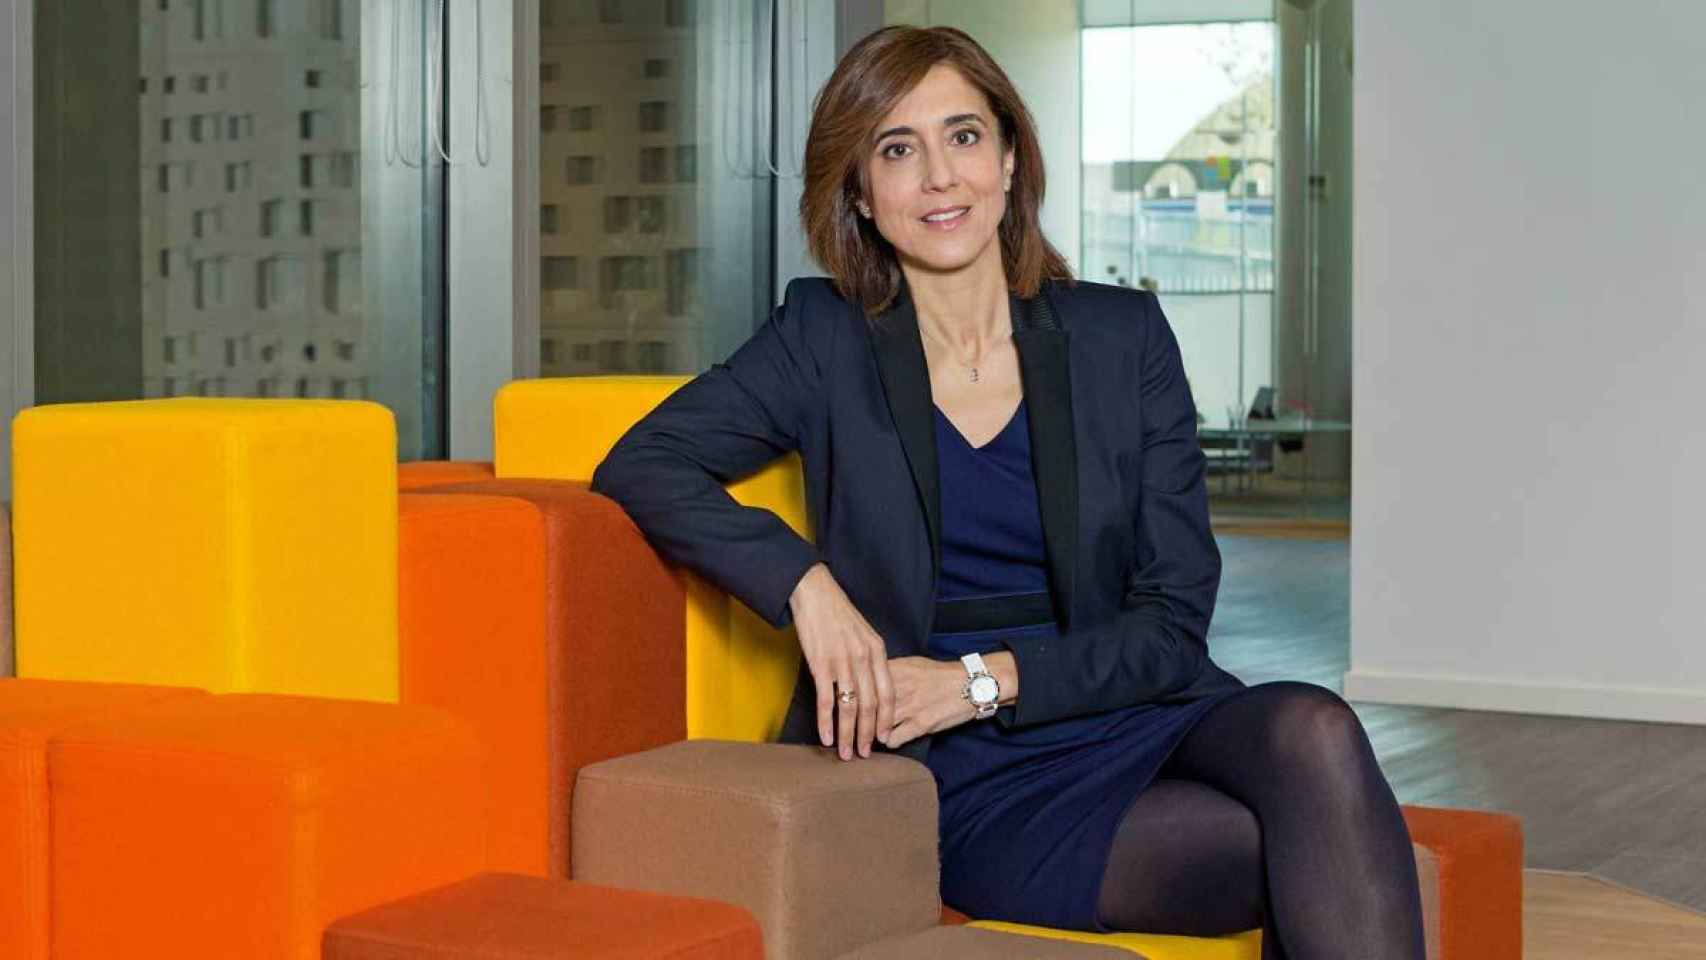 La nueva consejera independiente de Inditex, Pilar Álvarez, presidenta de Microsoft España.